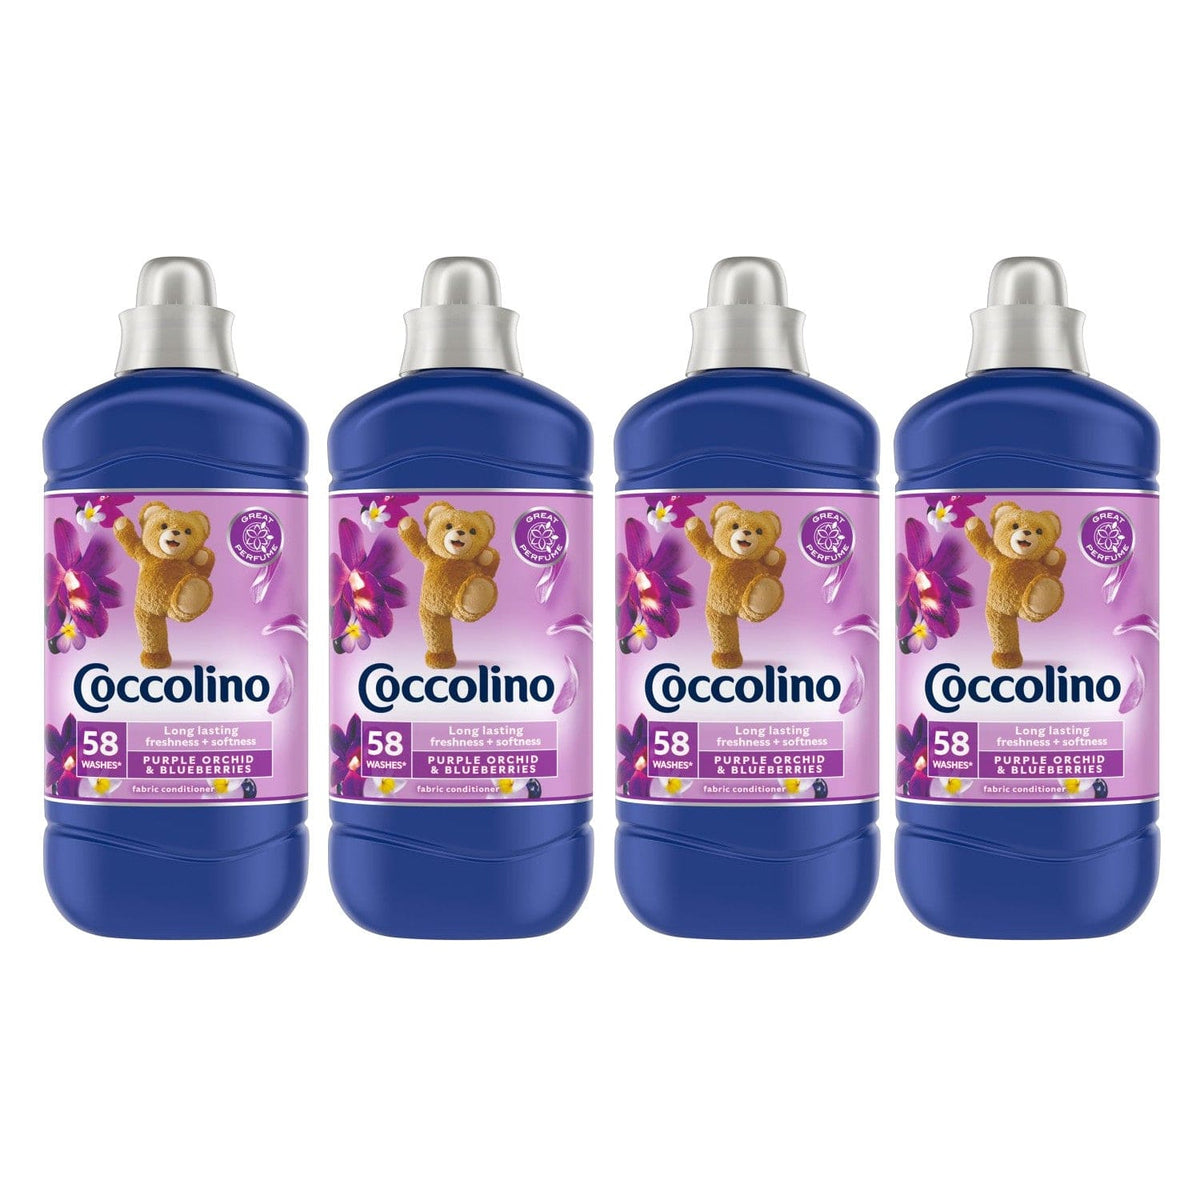 Produkt COCCOLINO Płyny do płukania 4x Płyn do płukania COCCOLINO Purple Orchid&amp;Blueberries  58 prań 1,45 l K_S01209_4